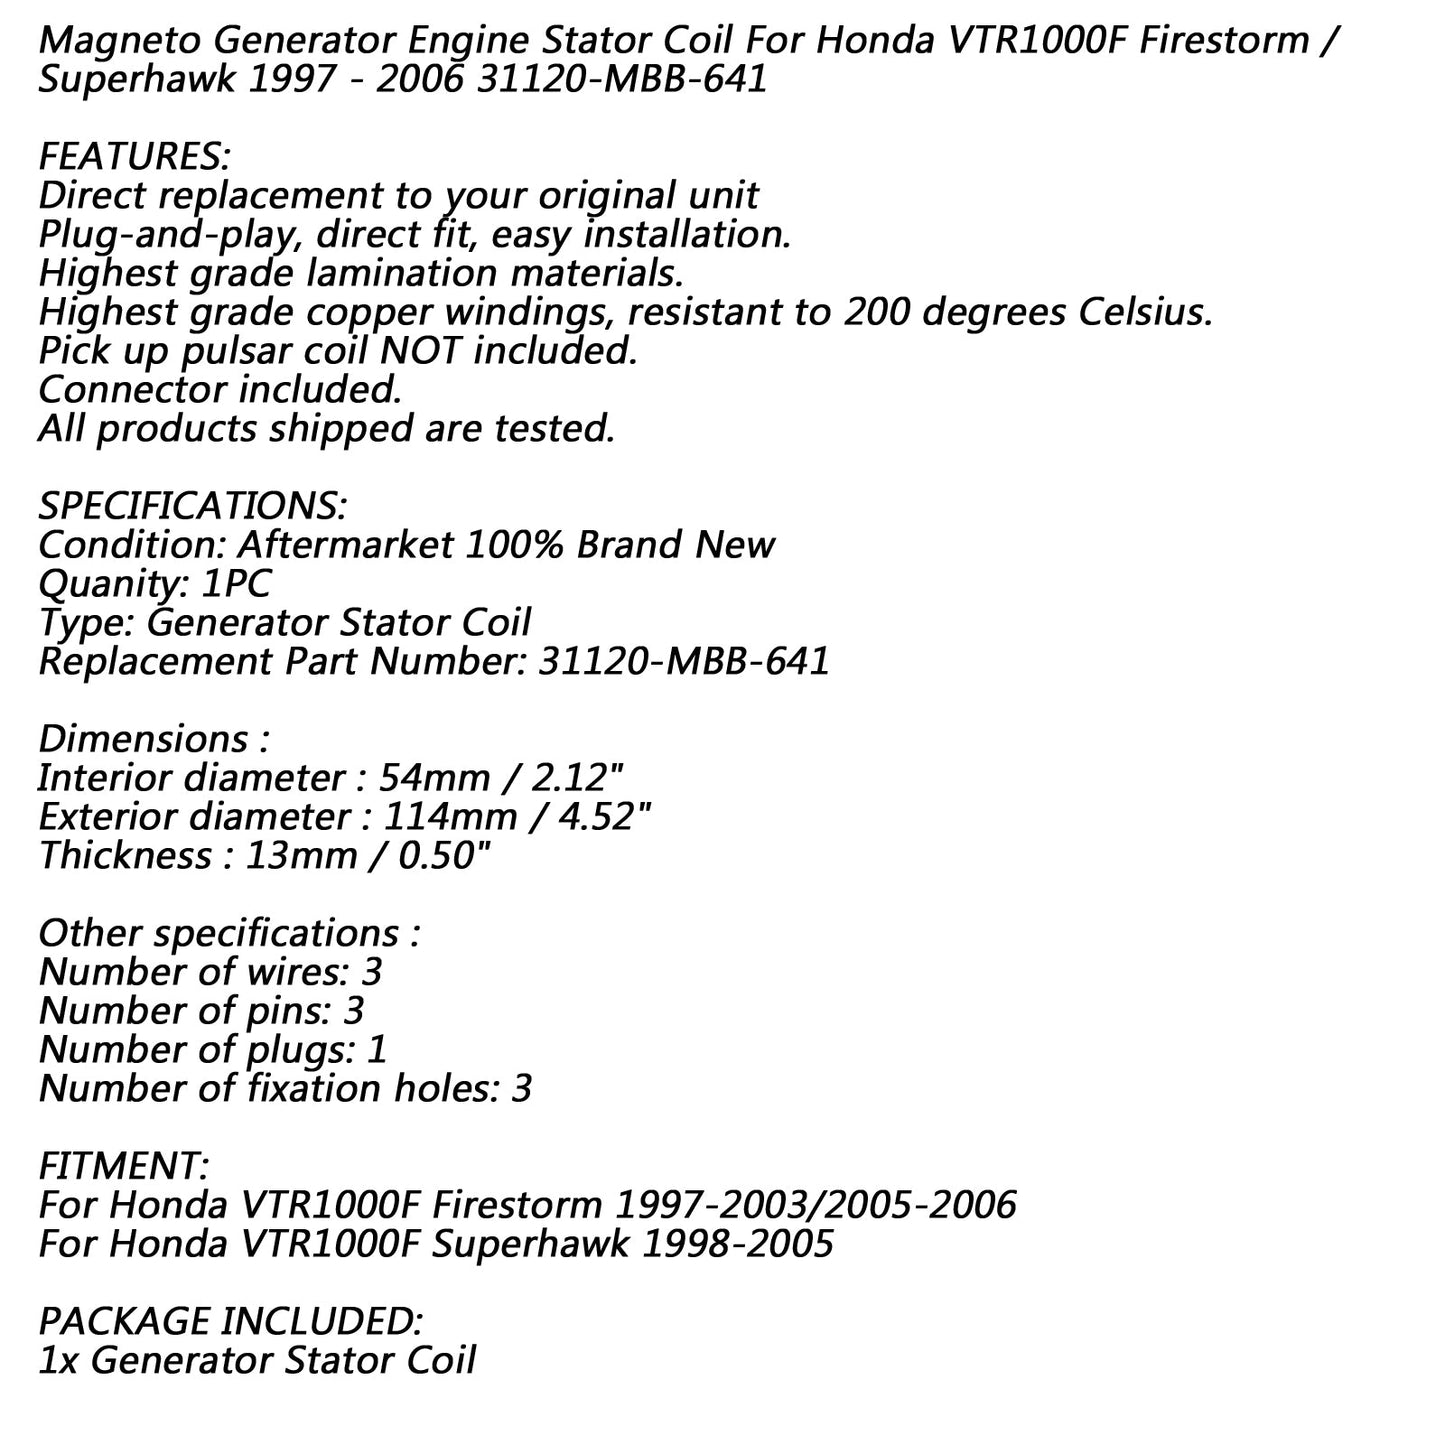 Bobine de stator 18 pôles pour Honda VTR1000F Firestorm/Superhawk 1997-2003/2005-2006 générique